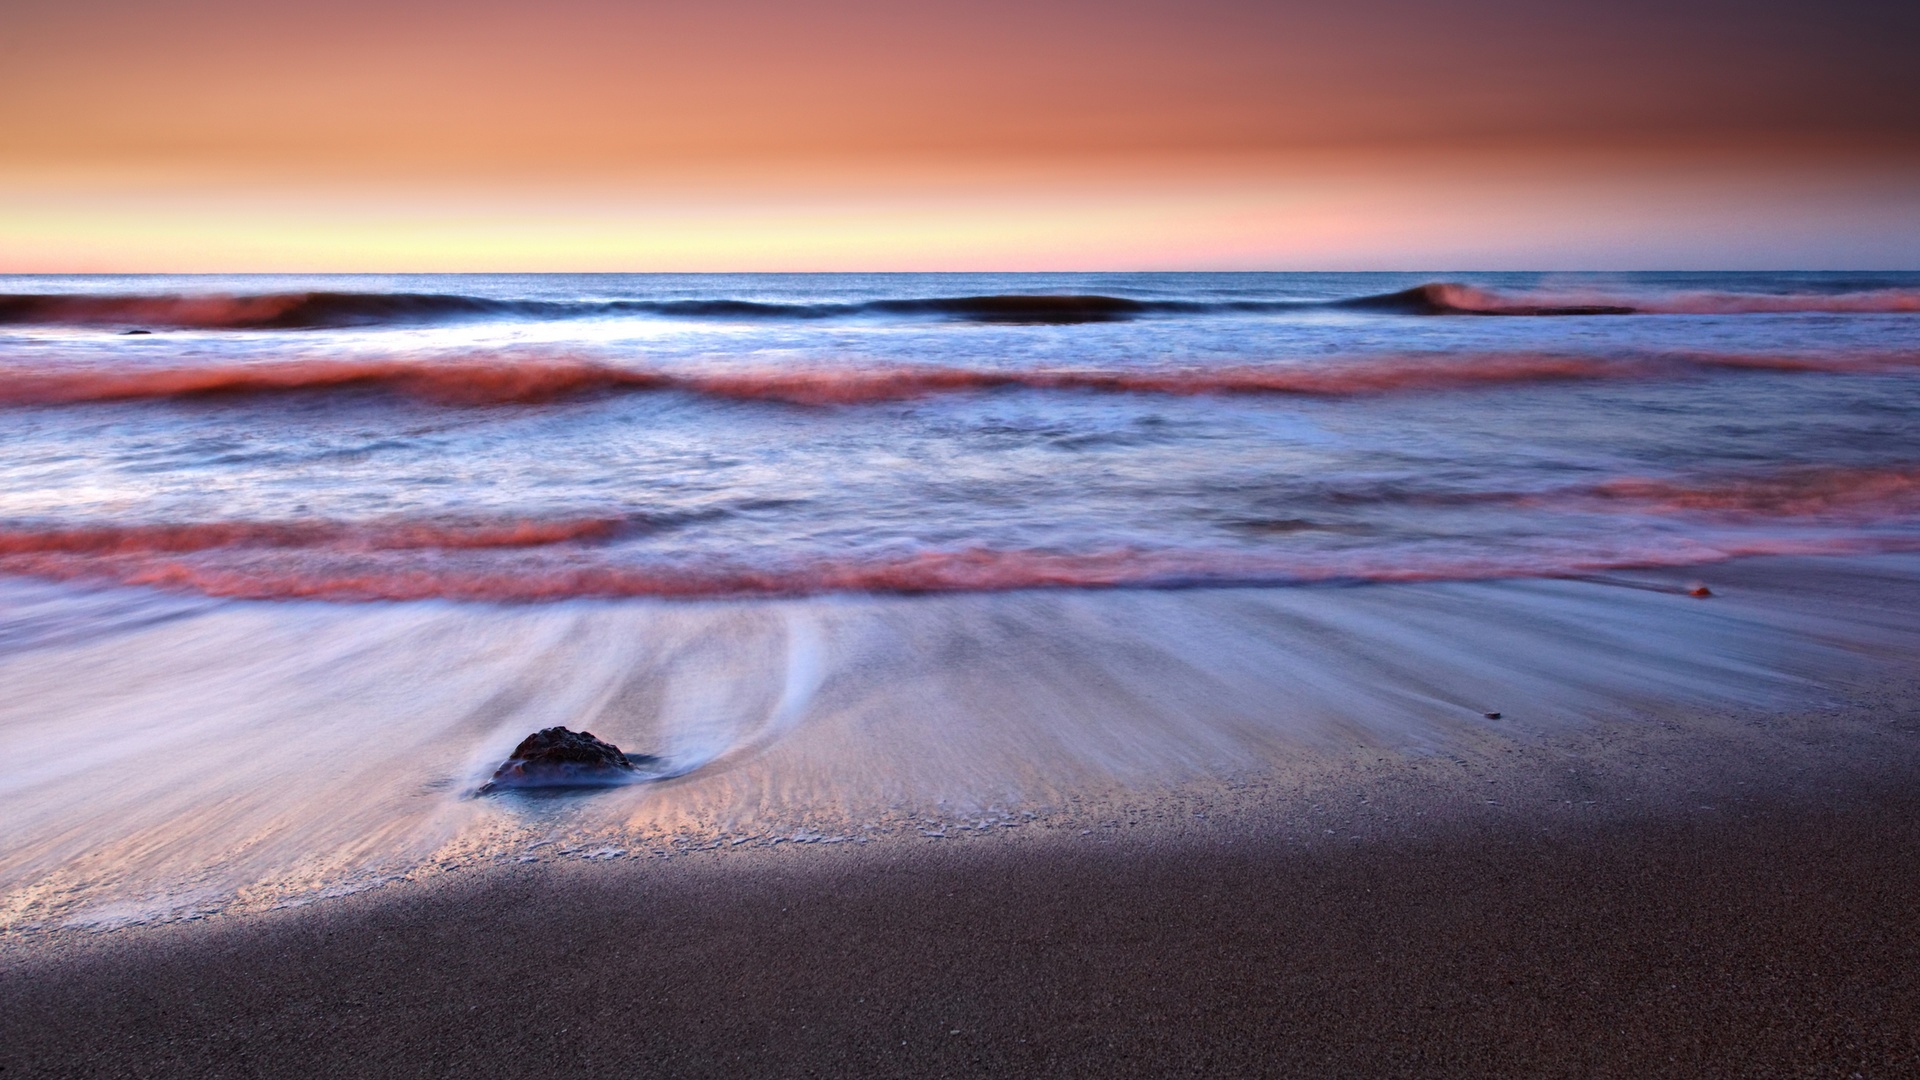 Bord de mer et coucher de soleil - Photographie 4K.jpg